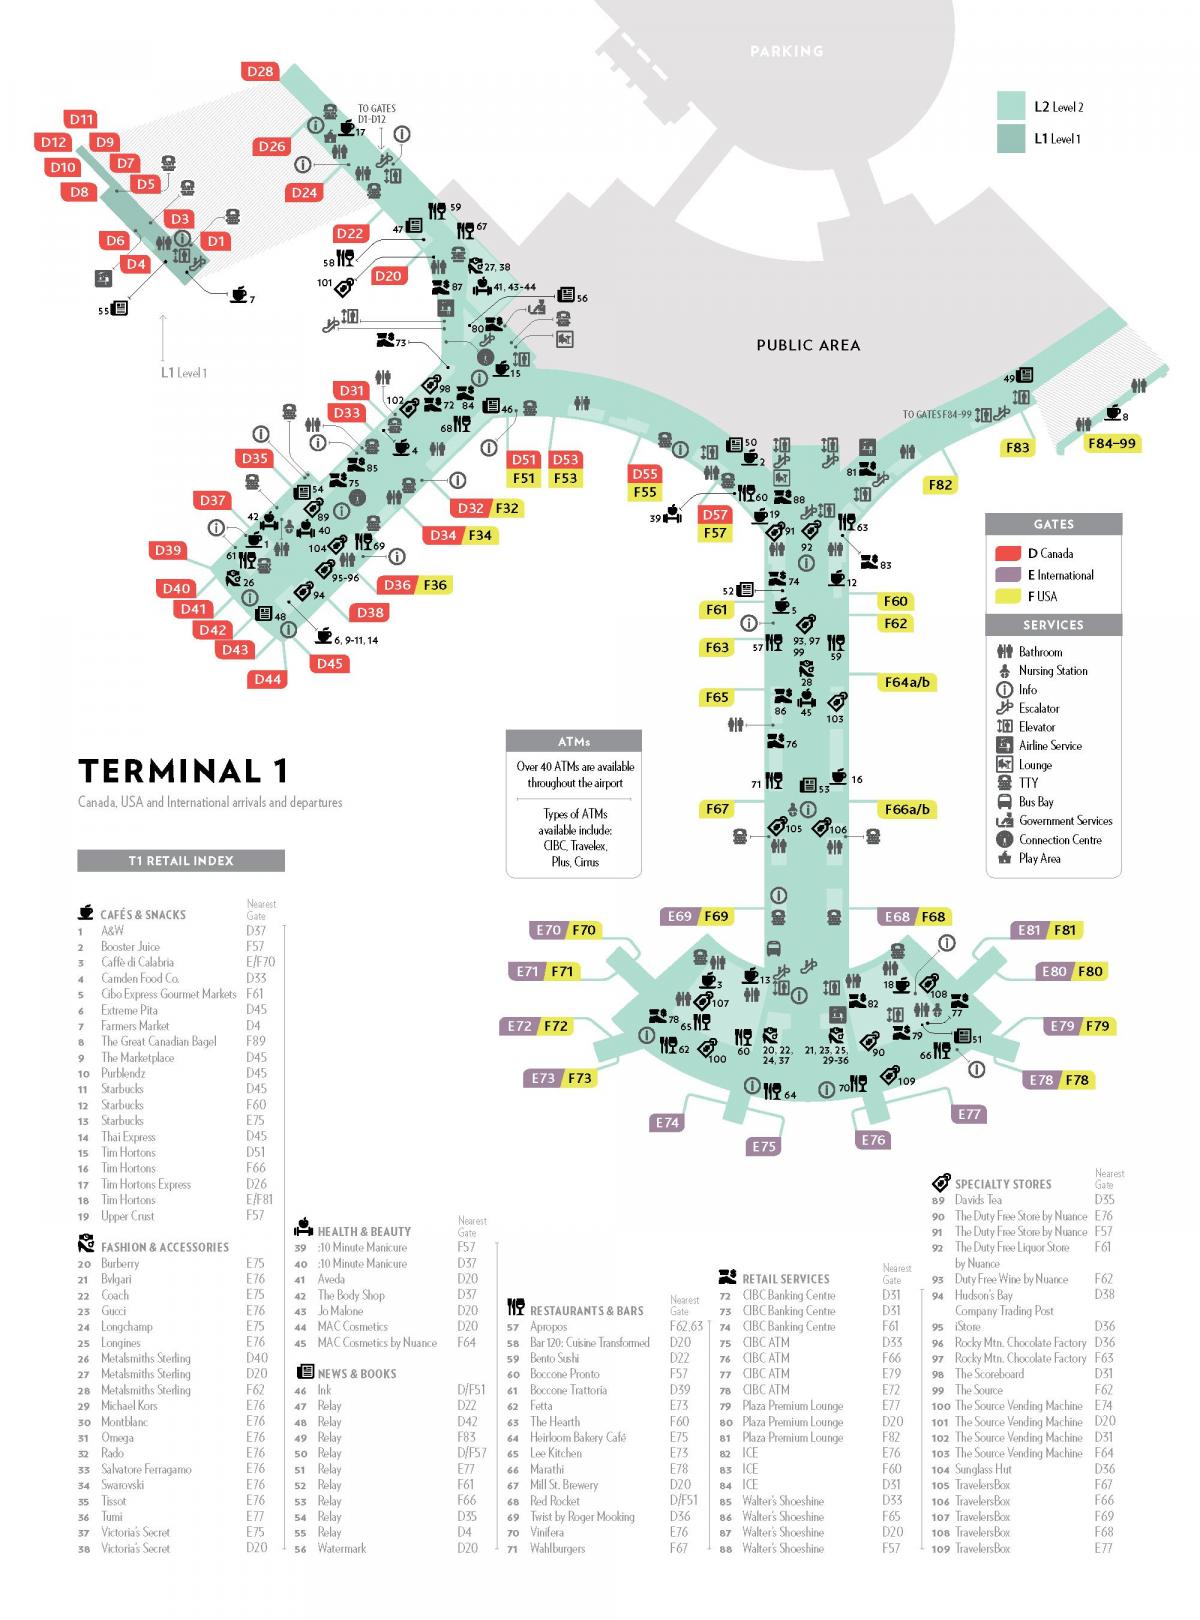 Pearson terminal 1 mapa